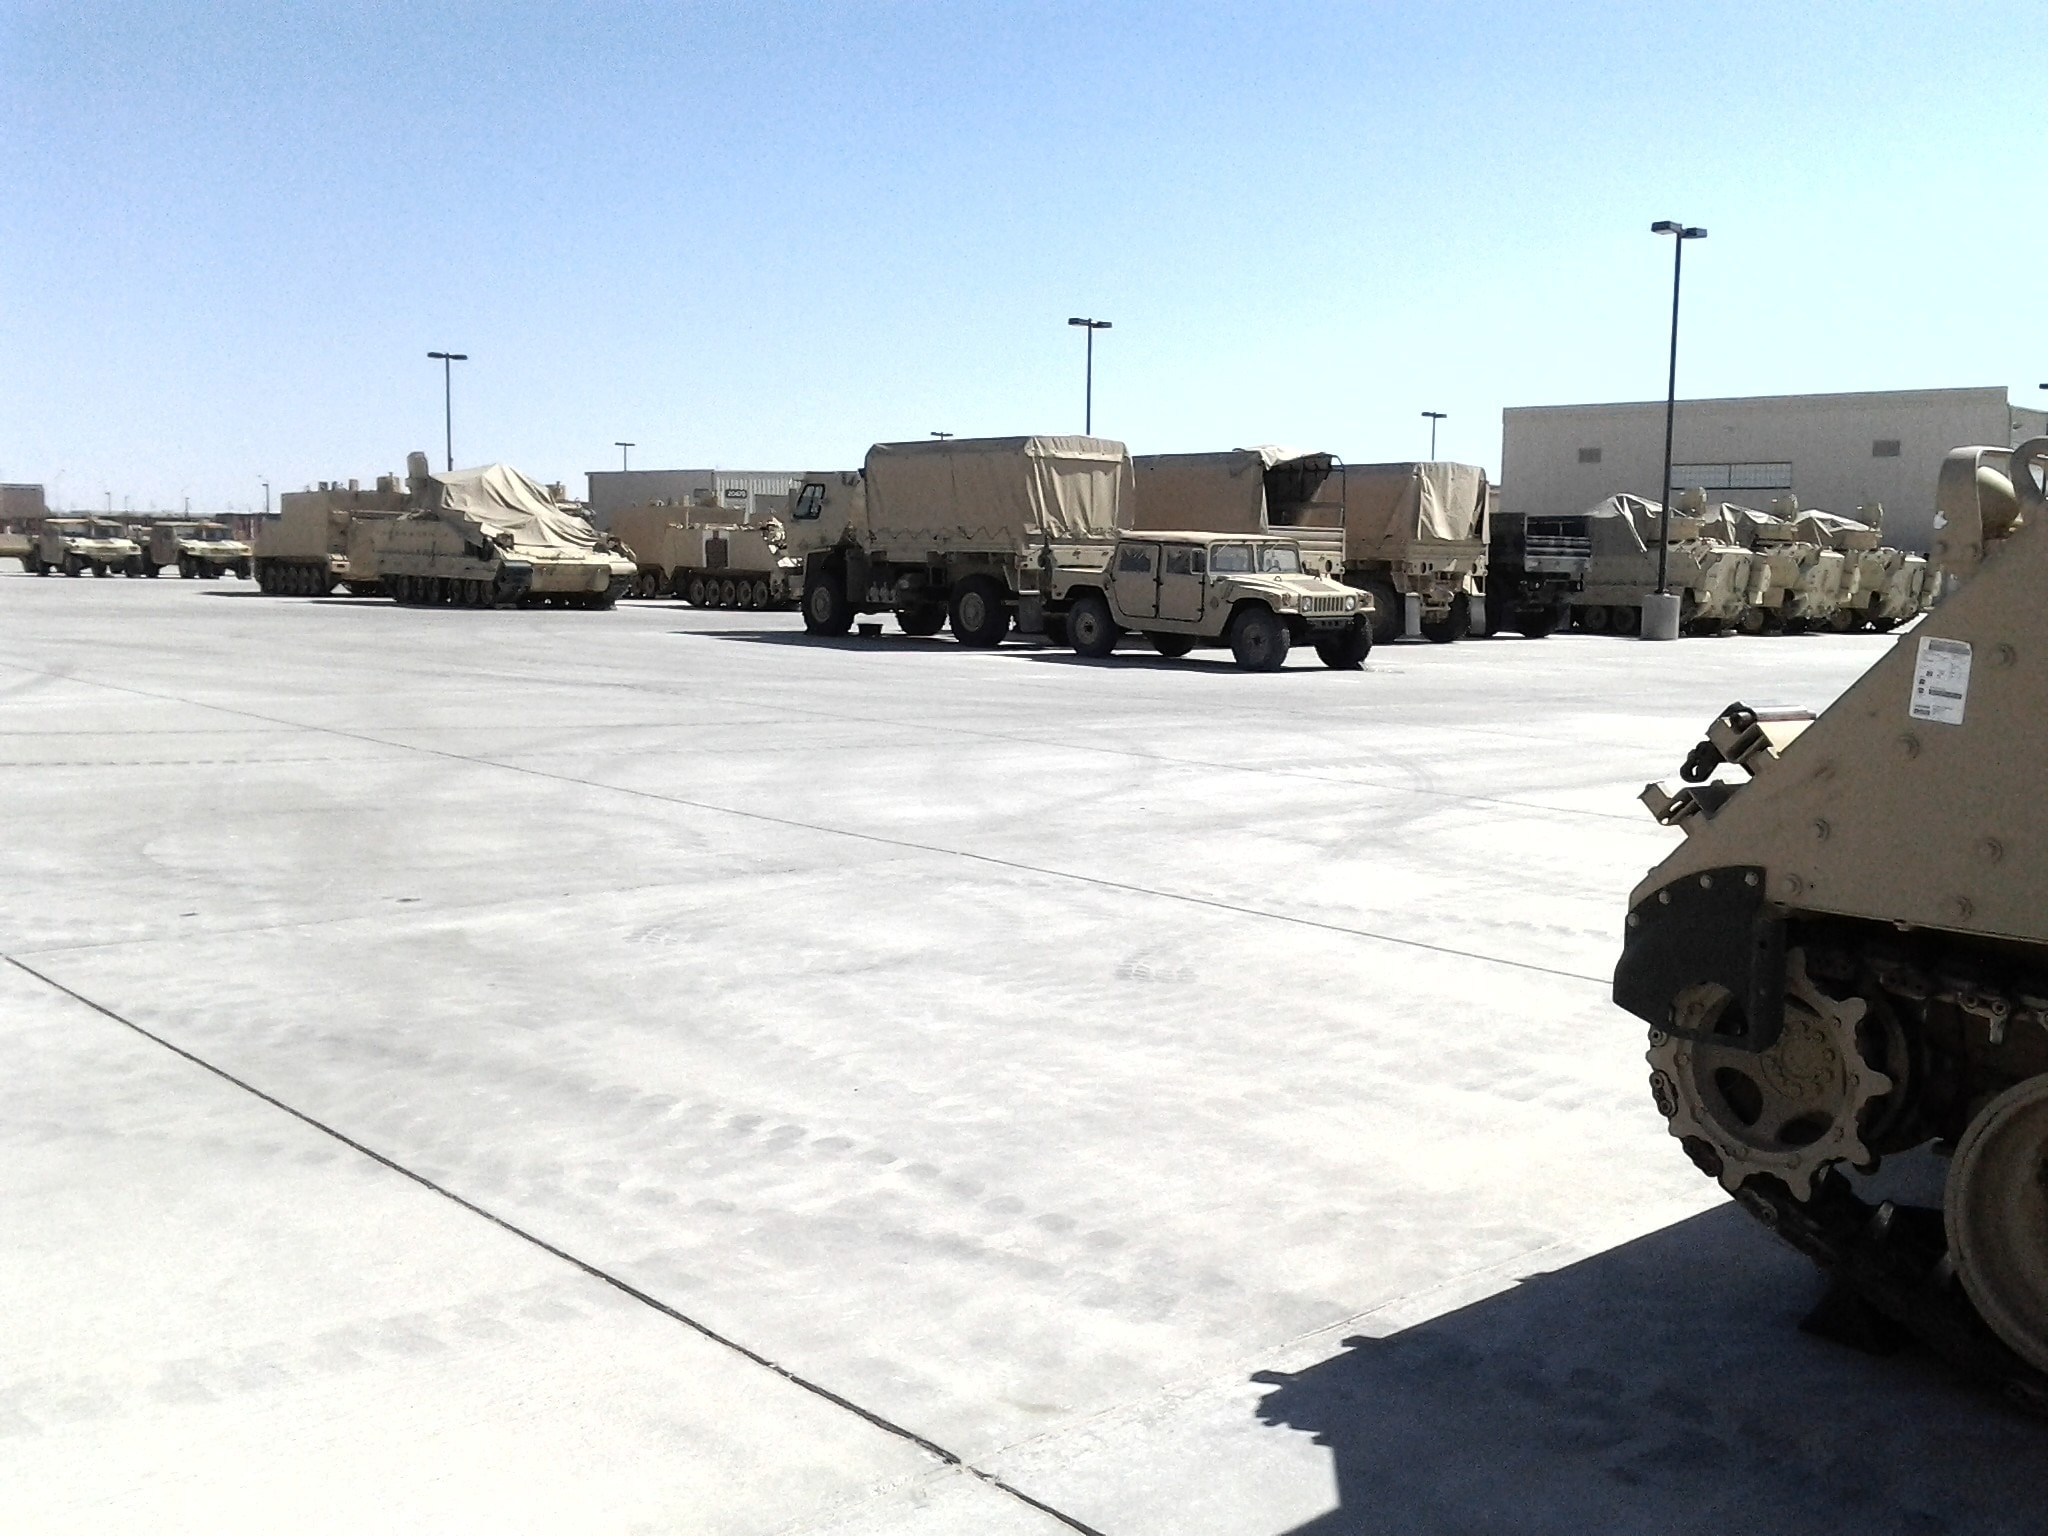 Tank, Military, Warfare, War, Humvee, transportation, winter